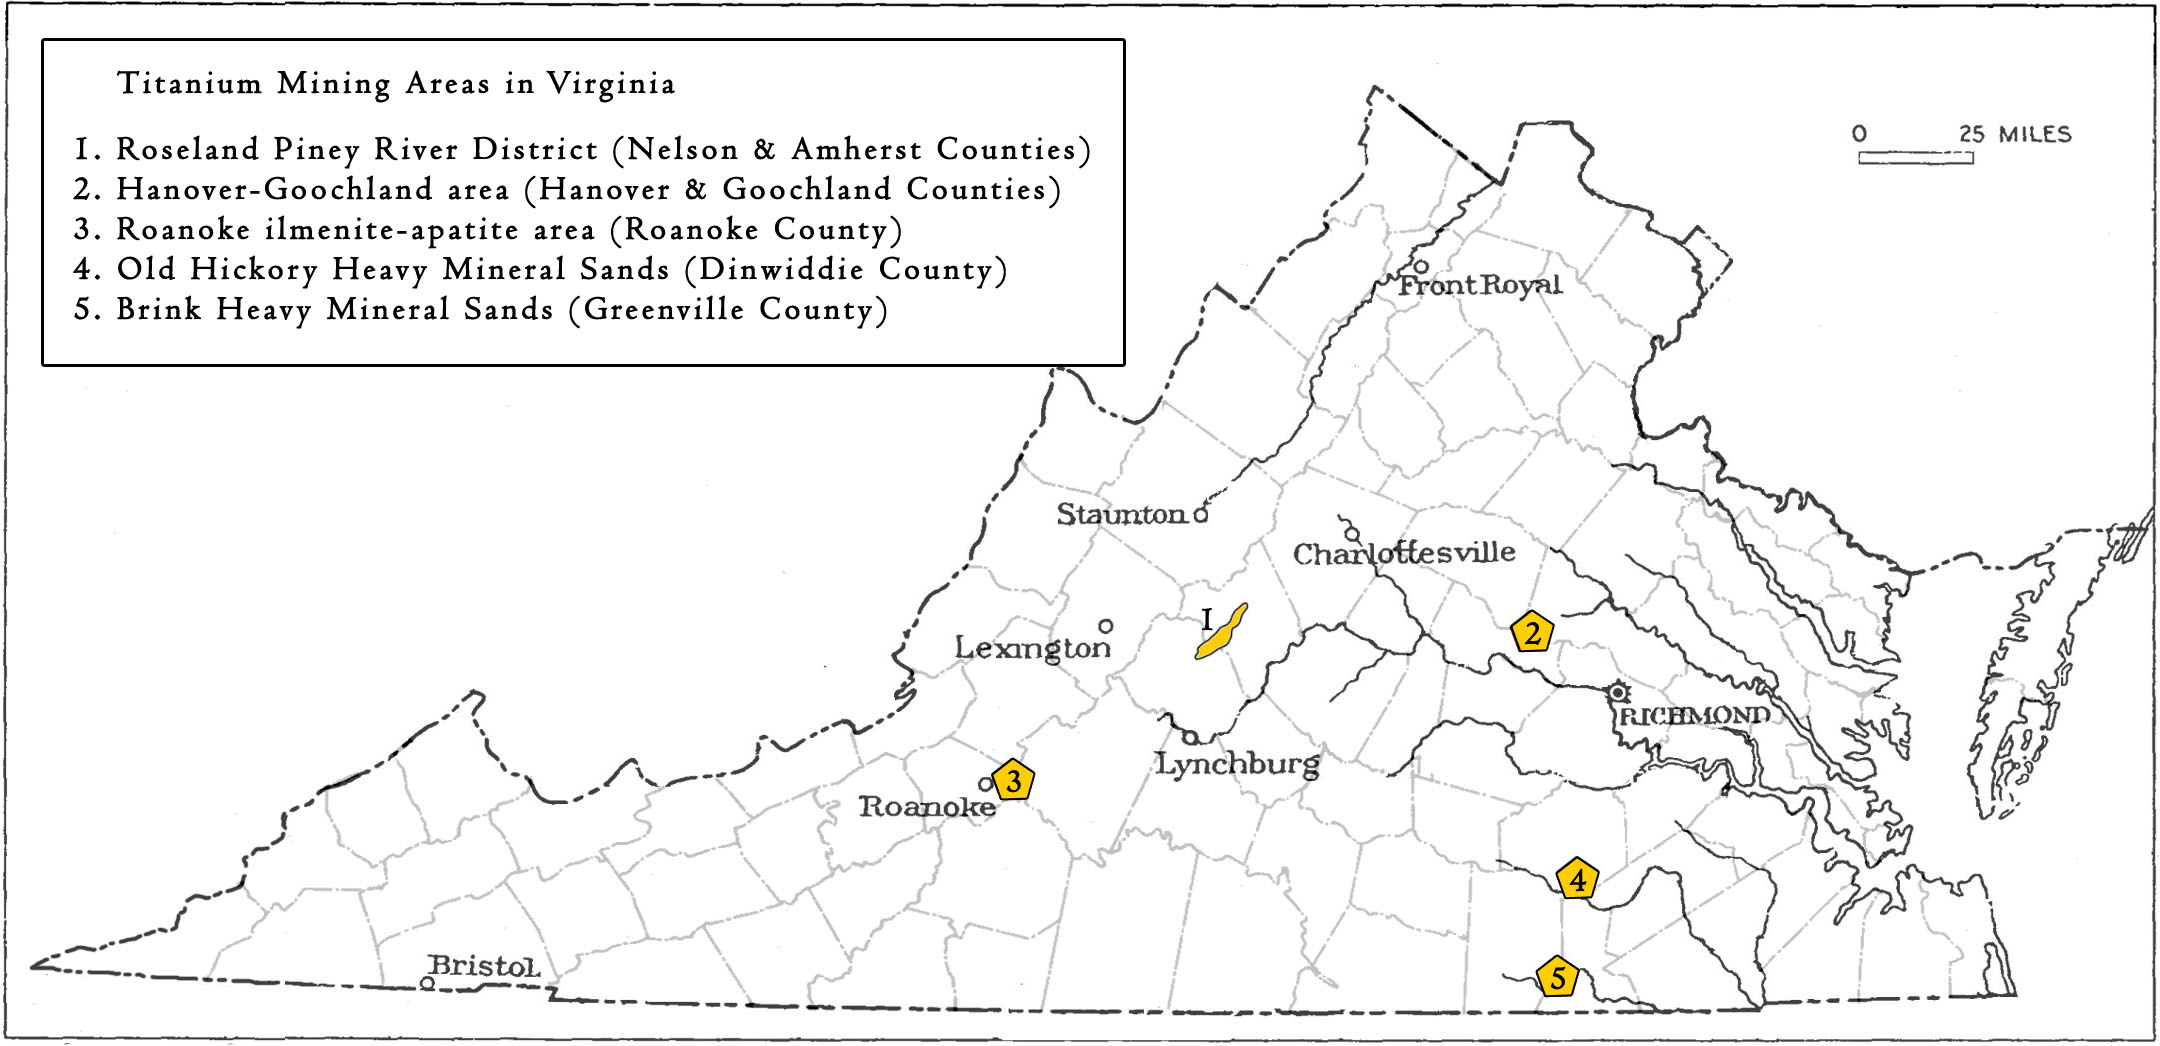 Areas mined for titanium in Virginia